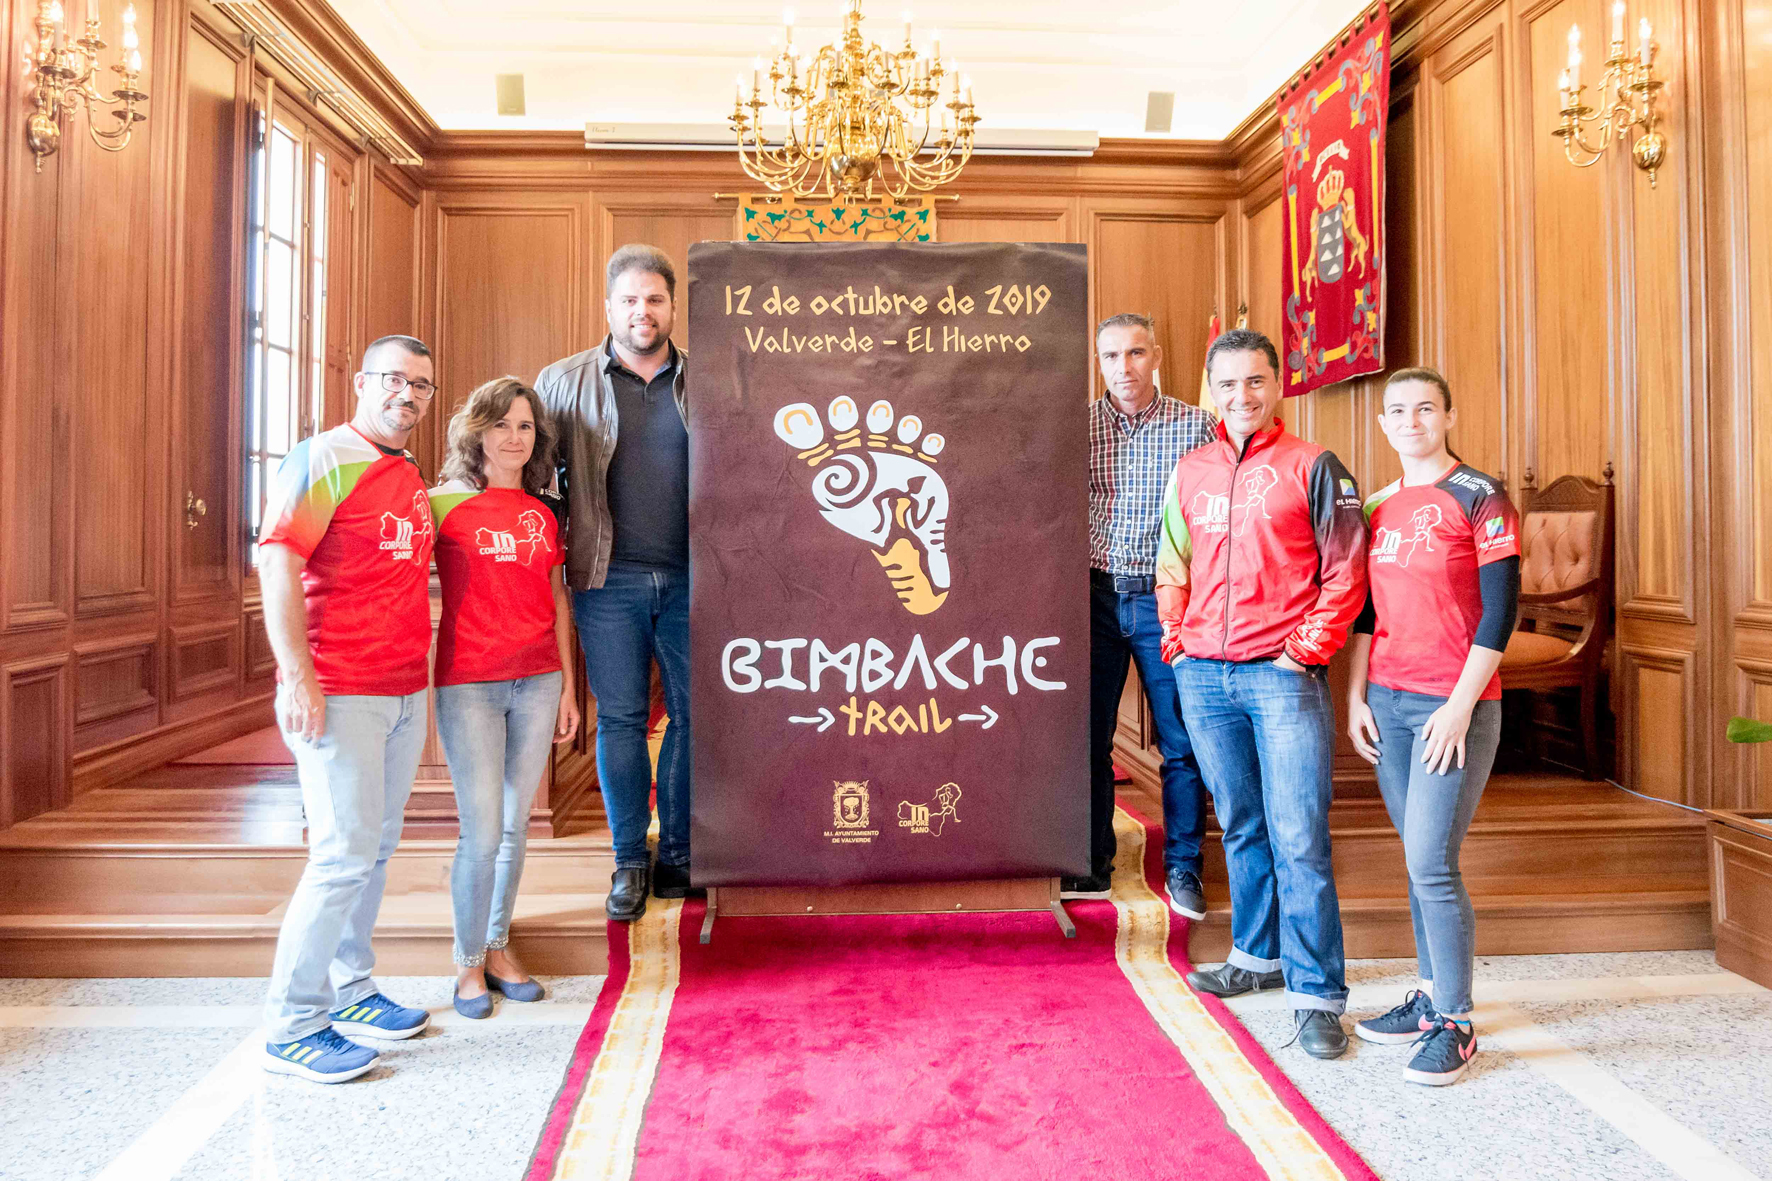 Valverde celebra el 12 de octubre la primera edición de la “Bimbache Trail”